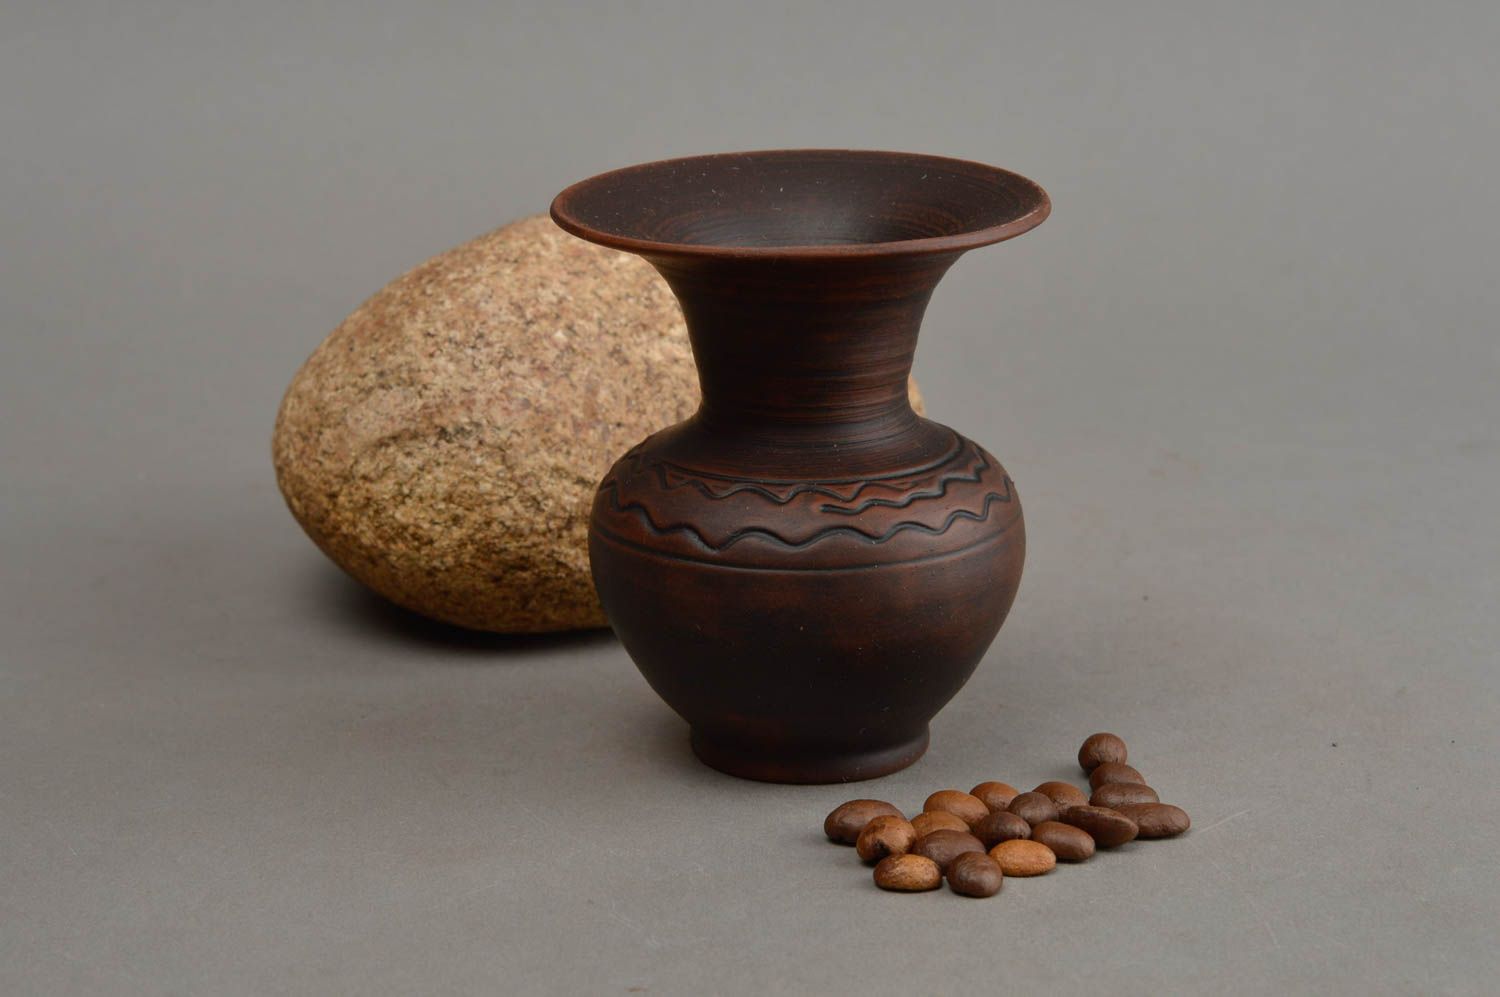 Little brown ceramic handmade flower vase for nightstand décor 3,2, 0,26 lb foto 1